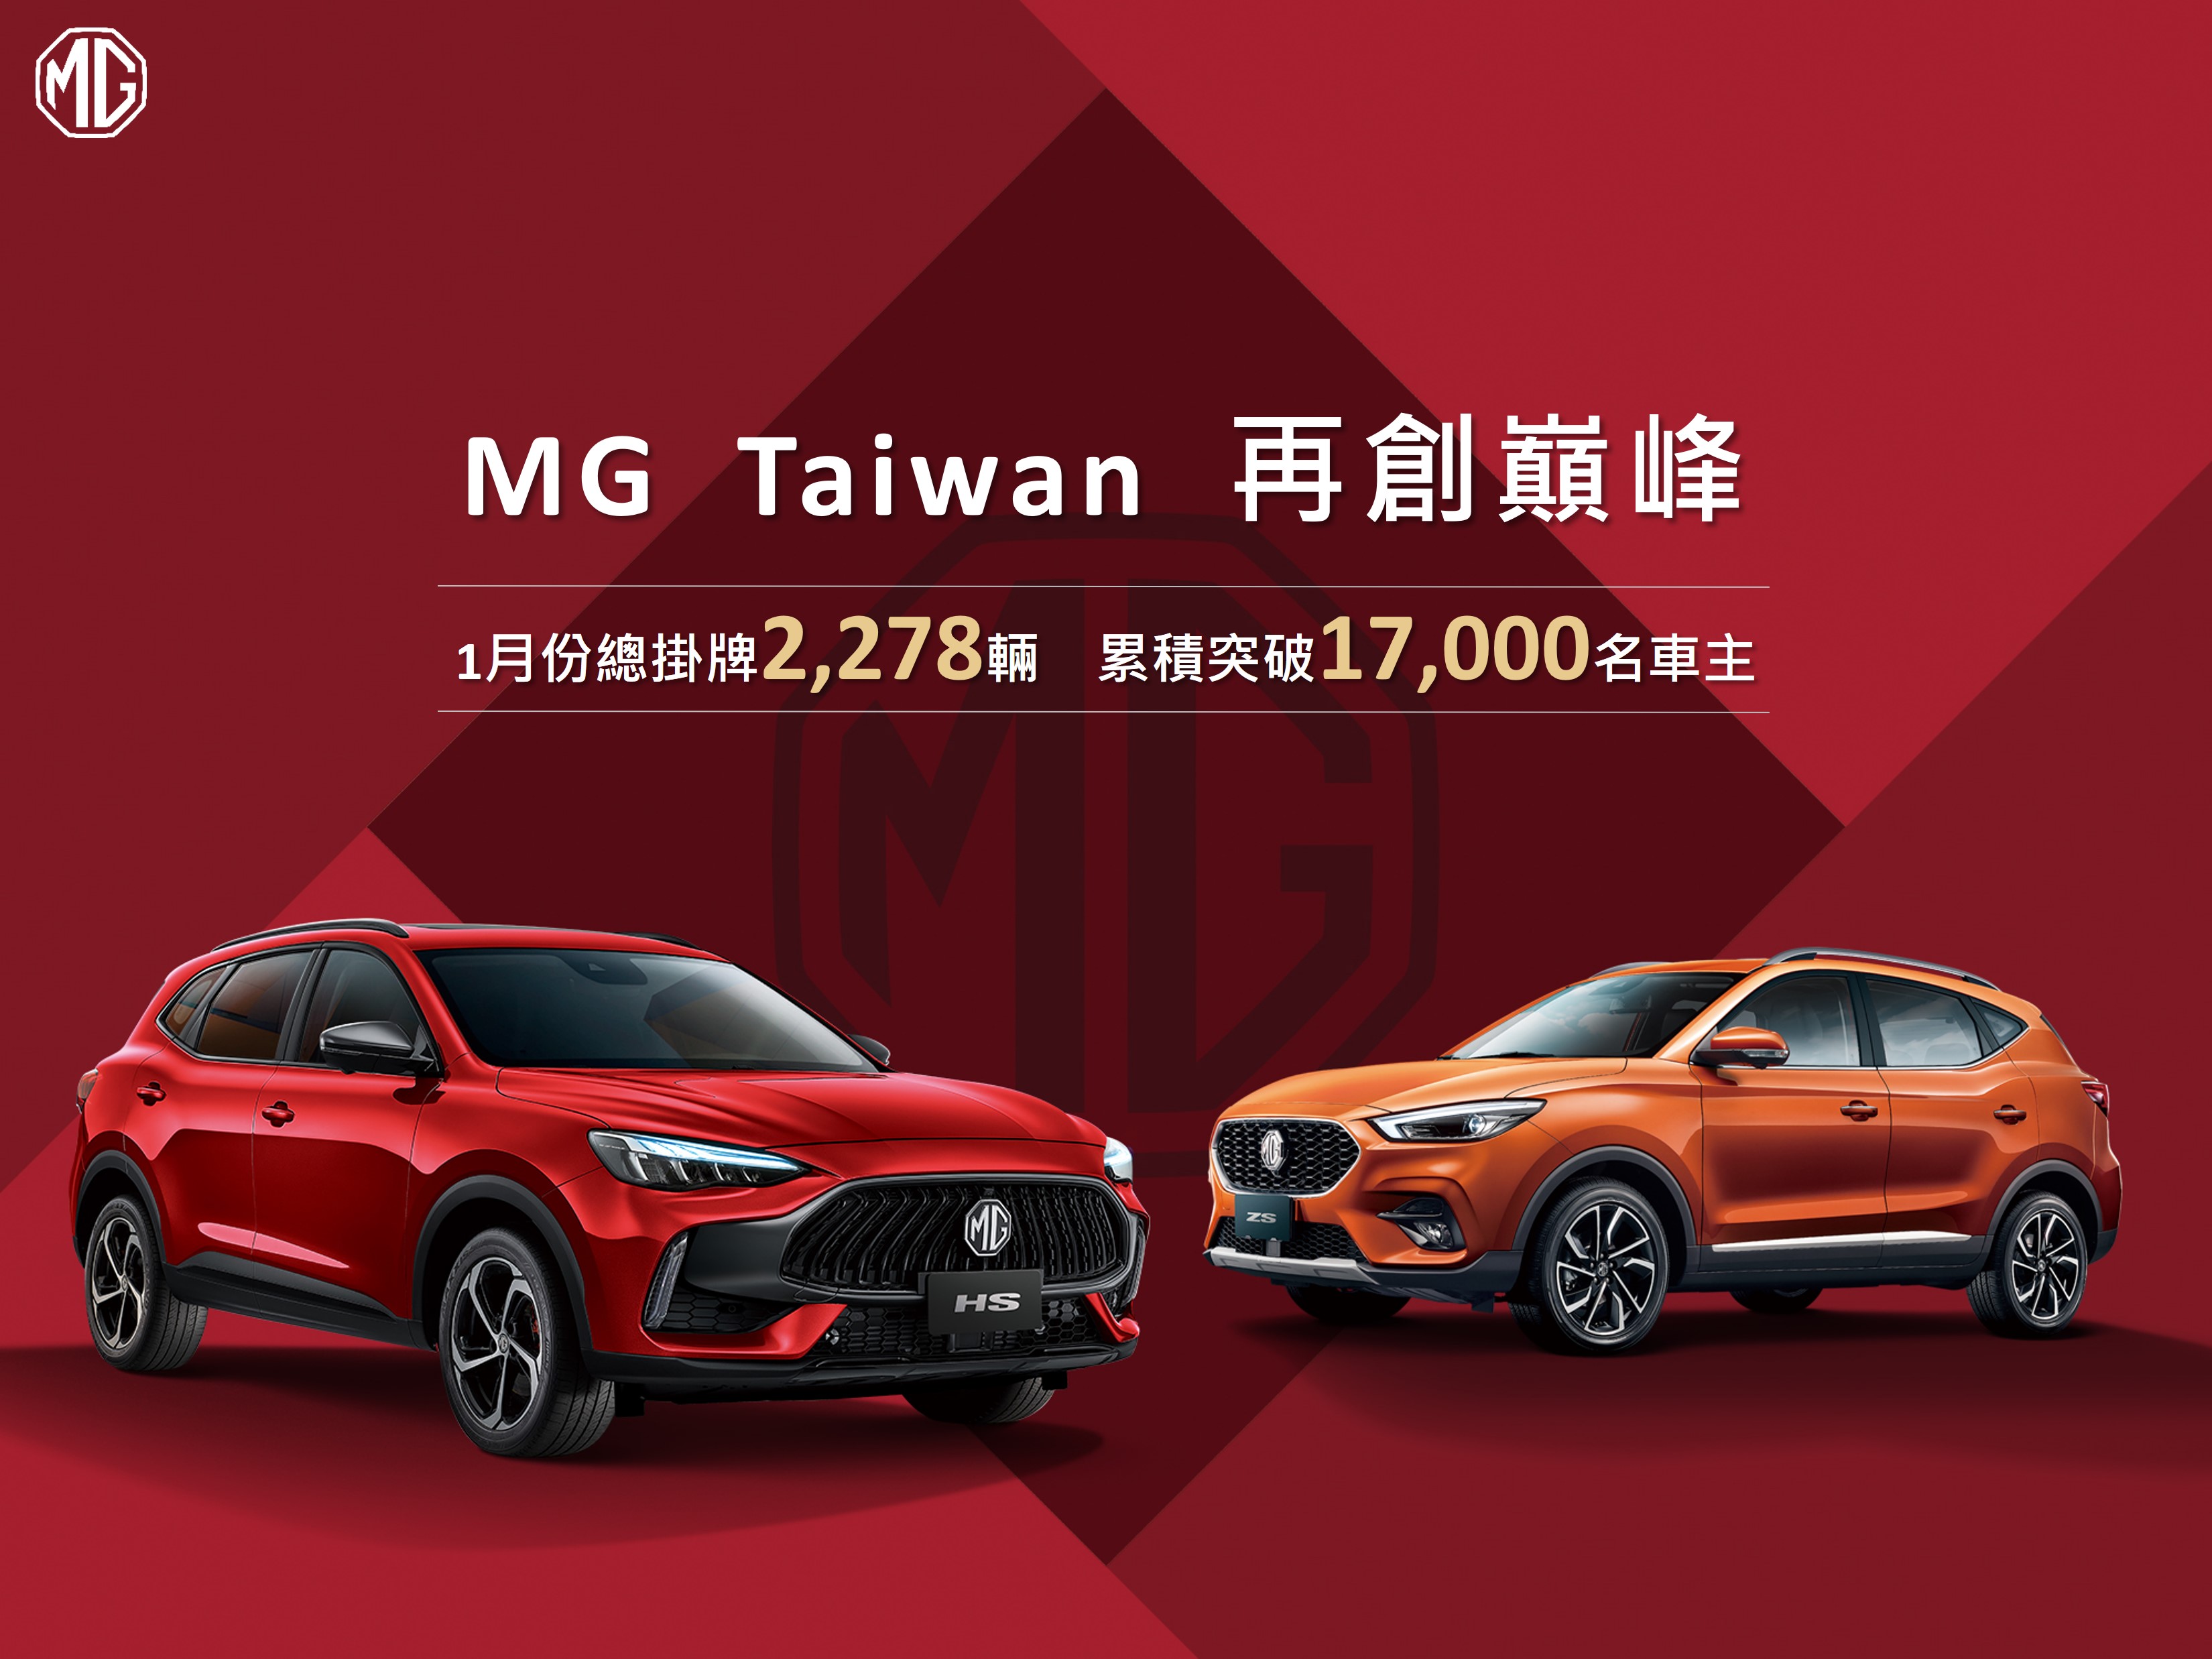 MG Taiwan 1月份總掛牌2,278輛再創巔峰 累積突破1.7萬名車主較去年同期成長233% 市佔率首度突破5% 極致展現「超規滿配」產品實力